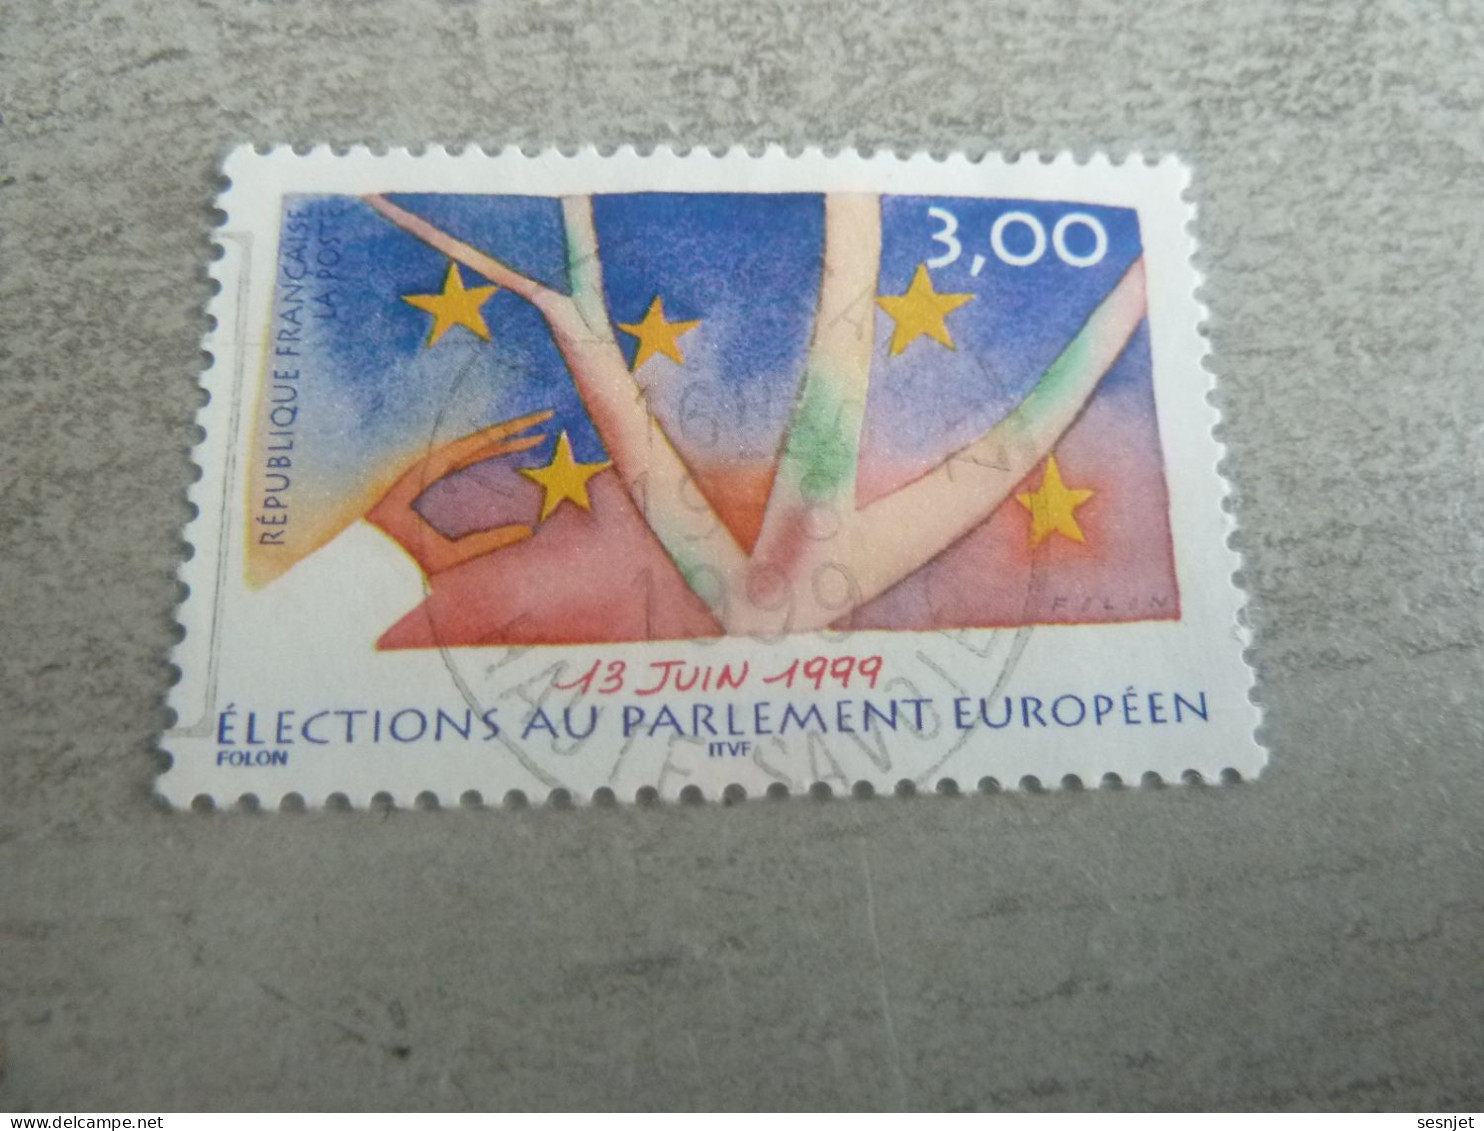 Elections Au Parlement Européen - 3f. - Yt 3237 - Multicolore - Oblitéré - Année 1999 - - Gebruikt